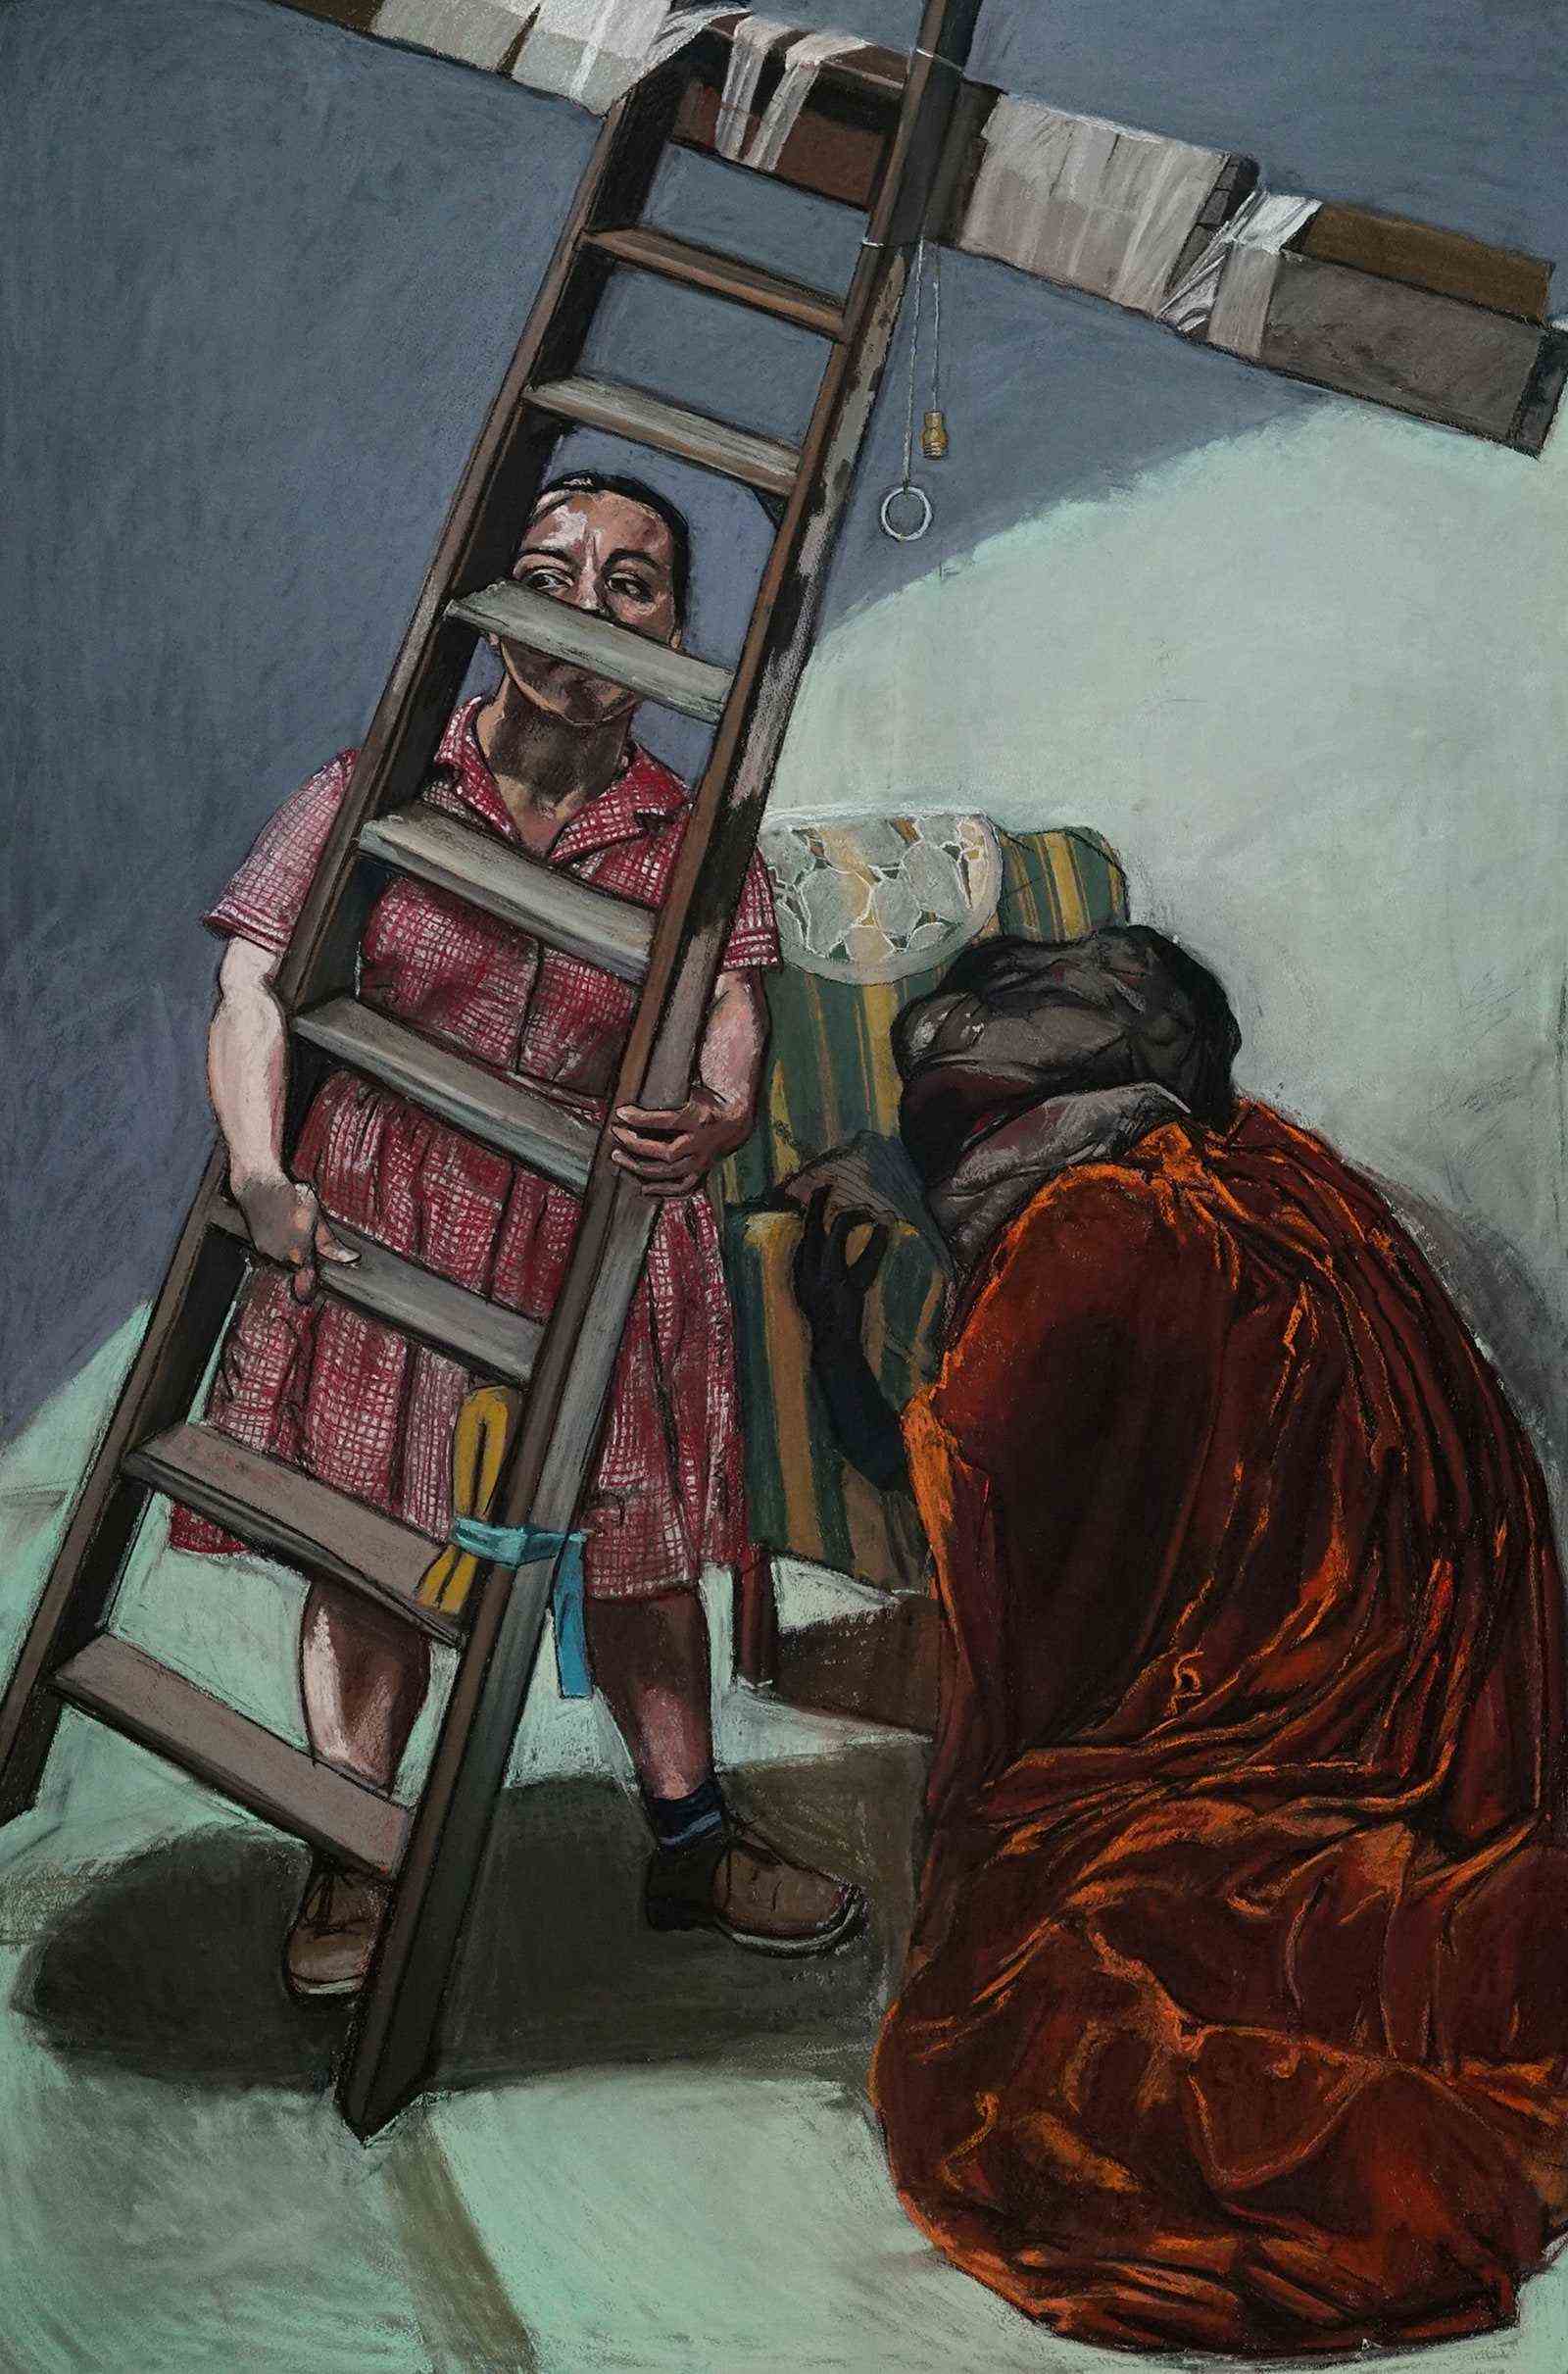 Gemälde einer Frau mit einer Leiter, die zu einem Kreuz mit einer knienden Figur im Vordergrund wird.